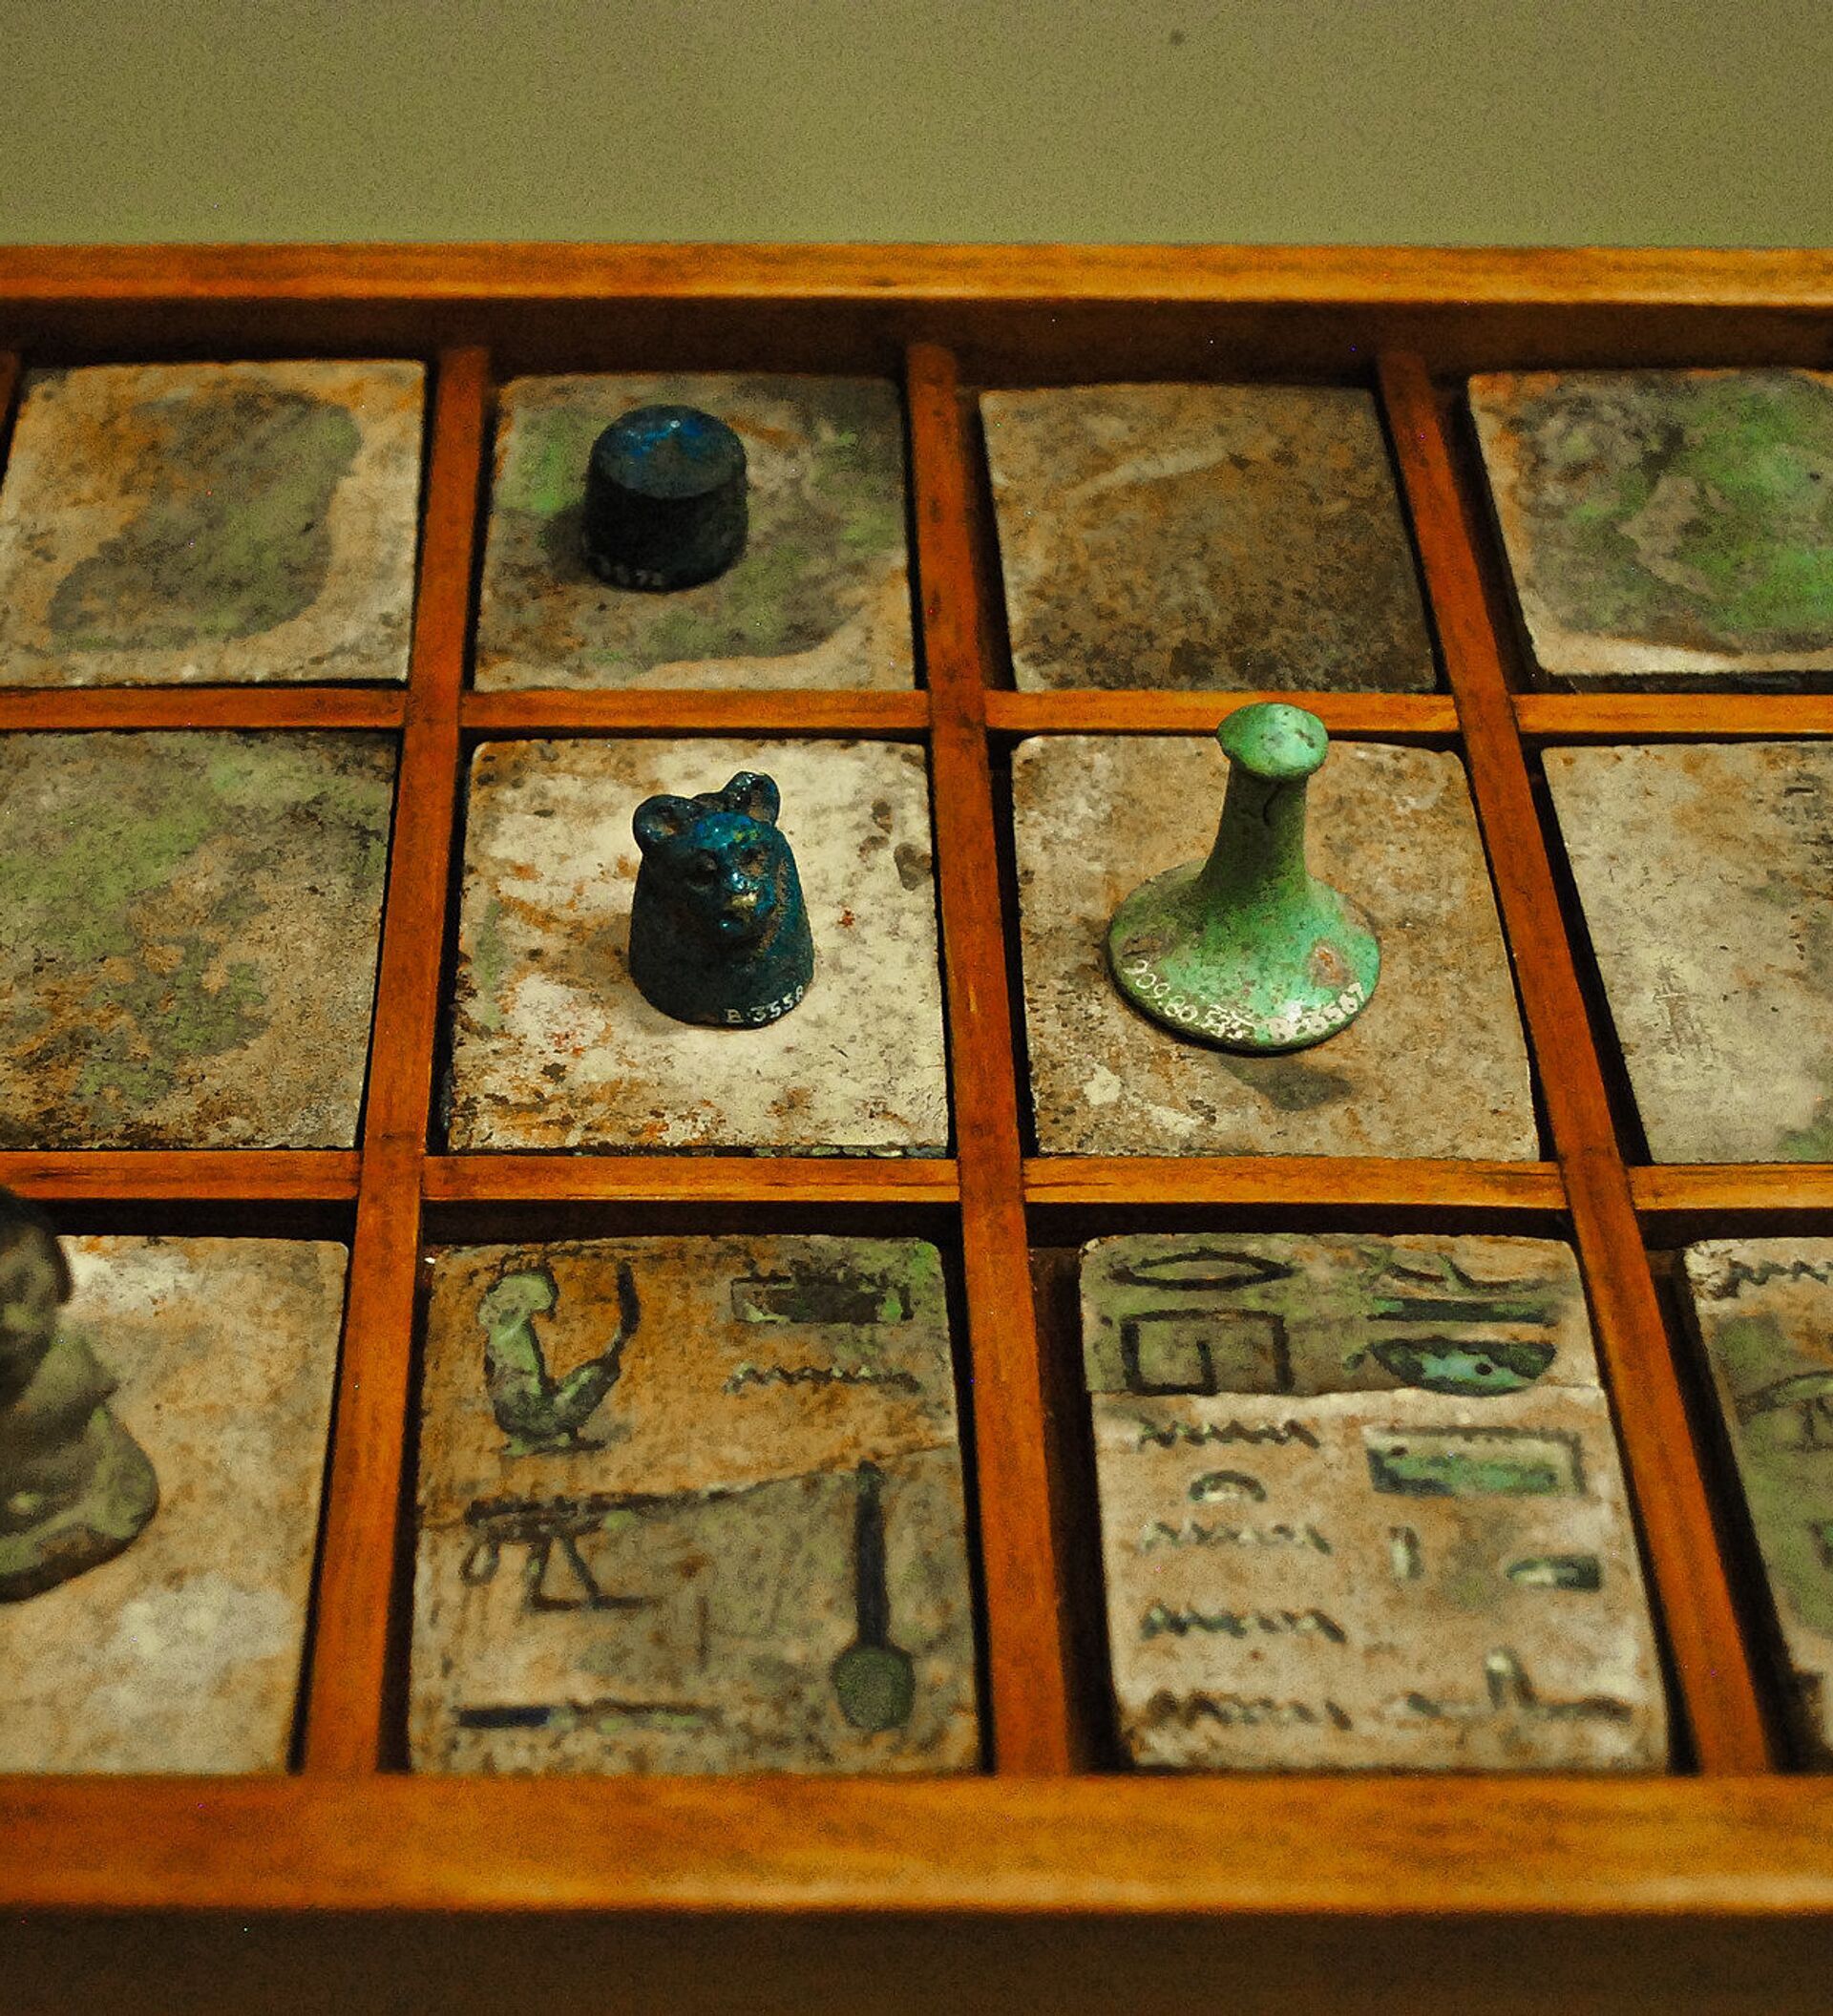 Senet jogo Egipcio da morte e o mais antigo do mundo